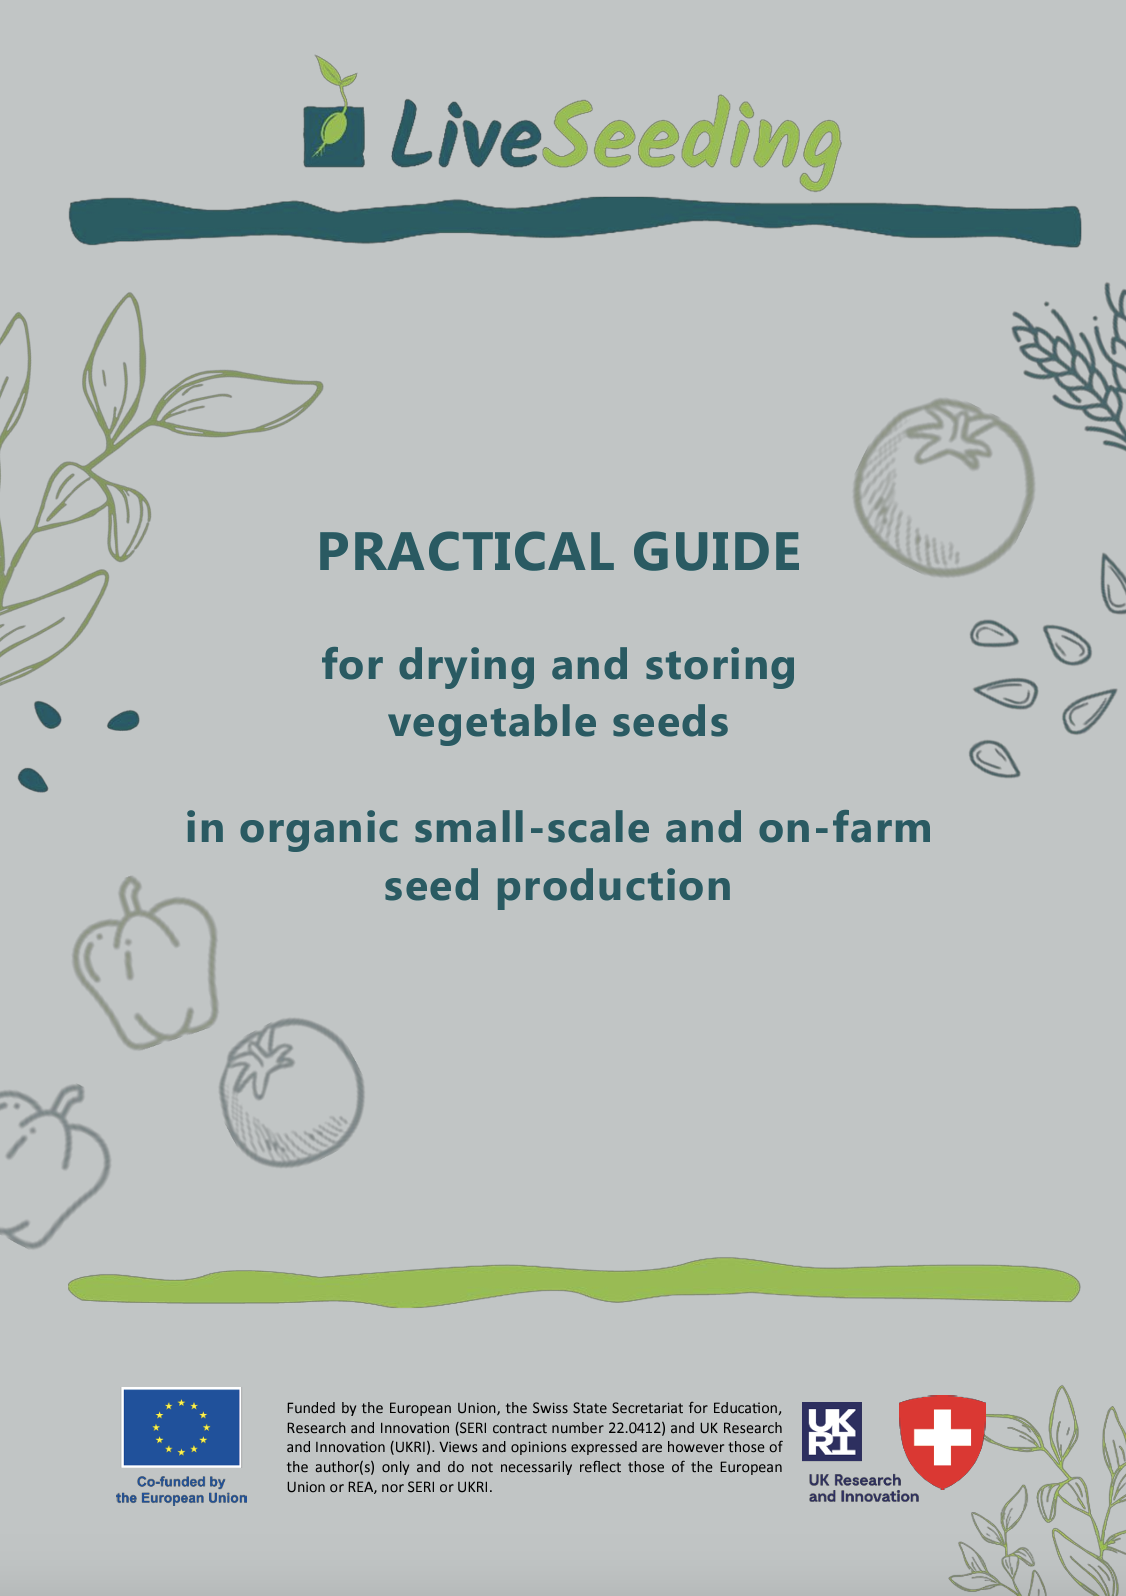 Guía práctica para secar y almacenar semillas de hortalizas en la producción de semillas orgánicas a pequeña escala y en granjas.